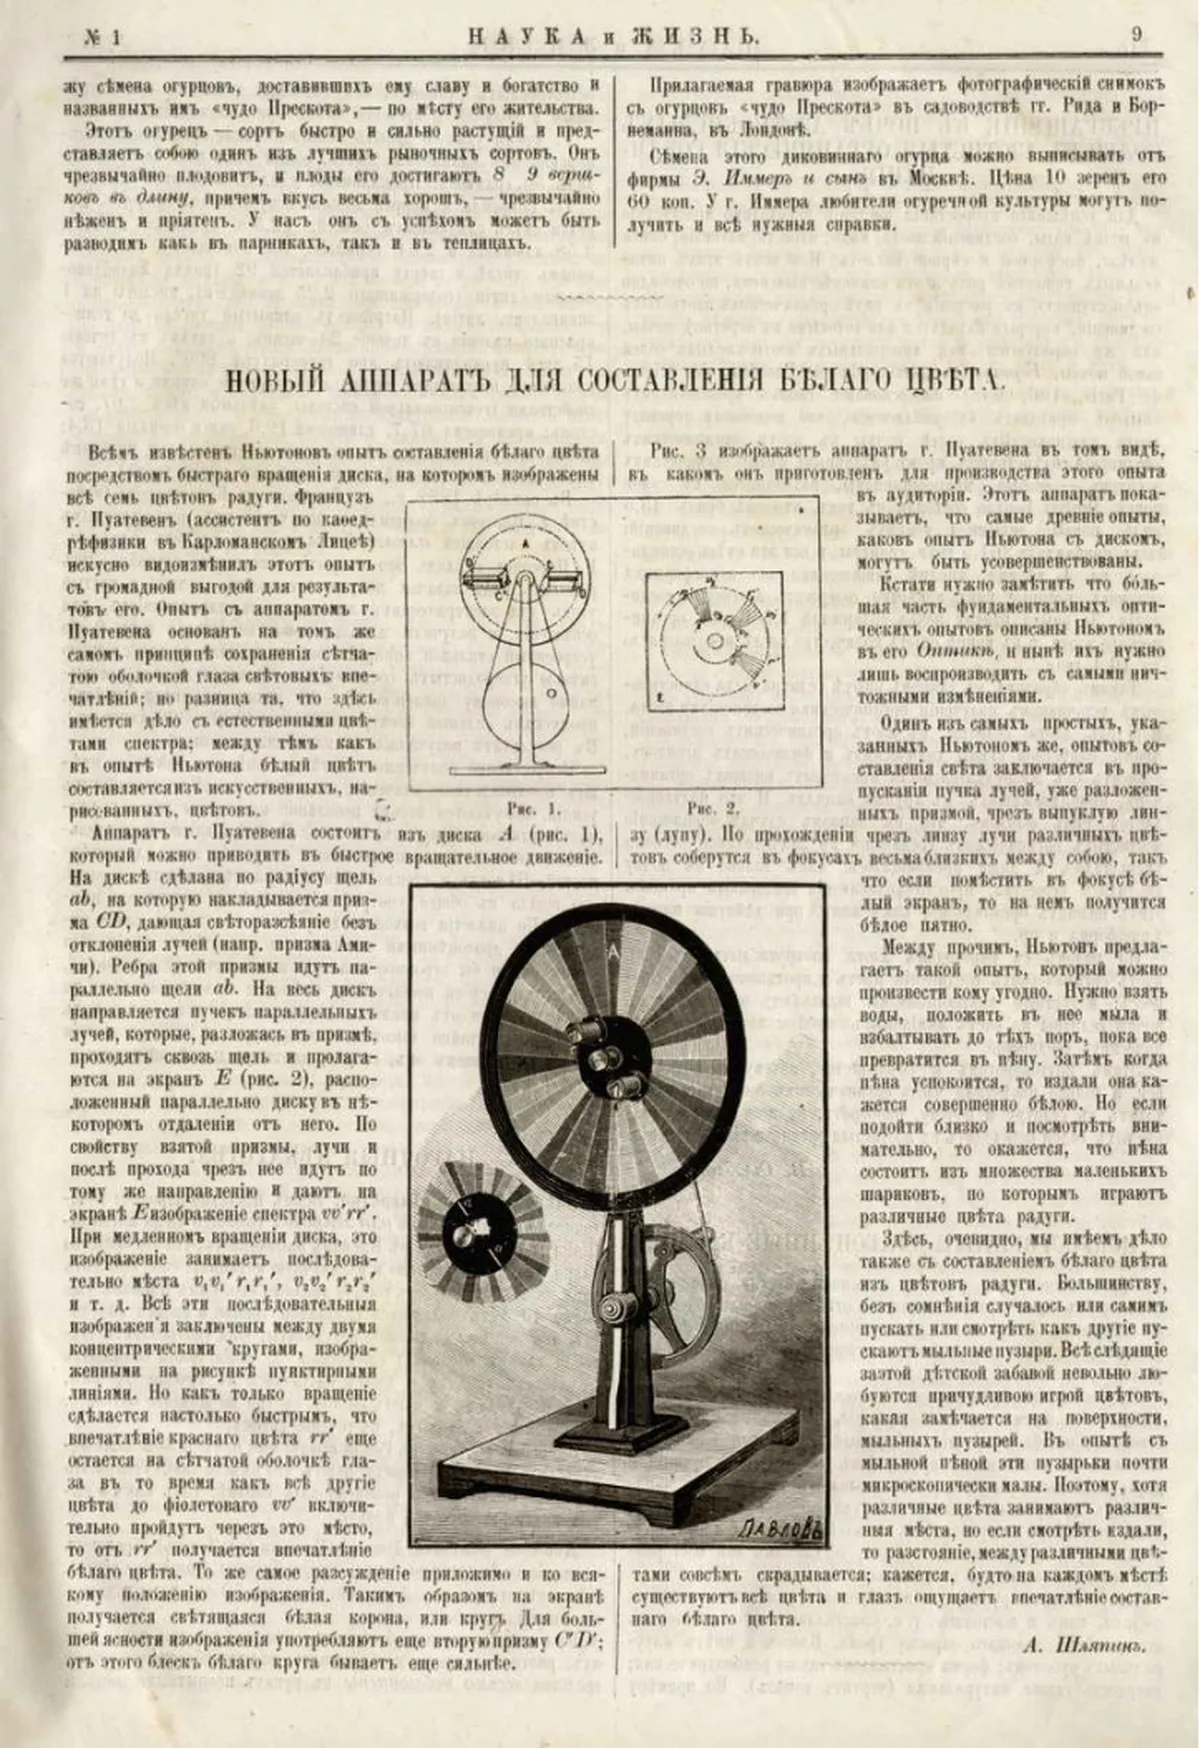 Инфографика изобретения Пуатевена для проведения опыта по исследованию свойств цвета. Один из первых опытов использования инфографики в СМИ